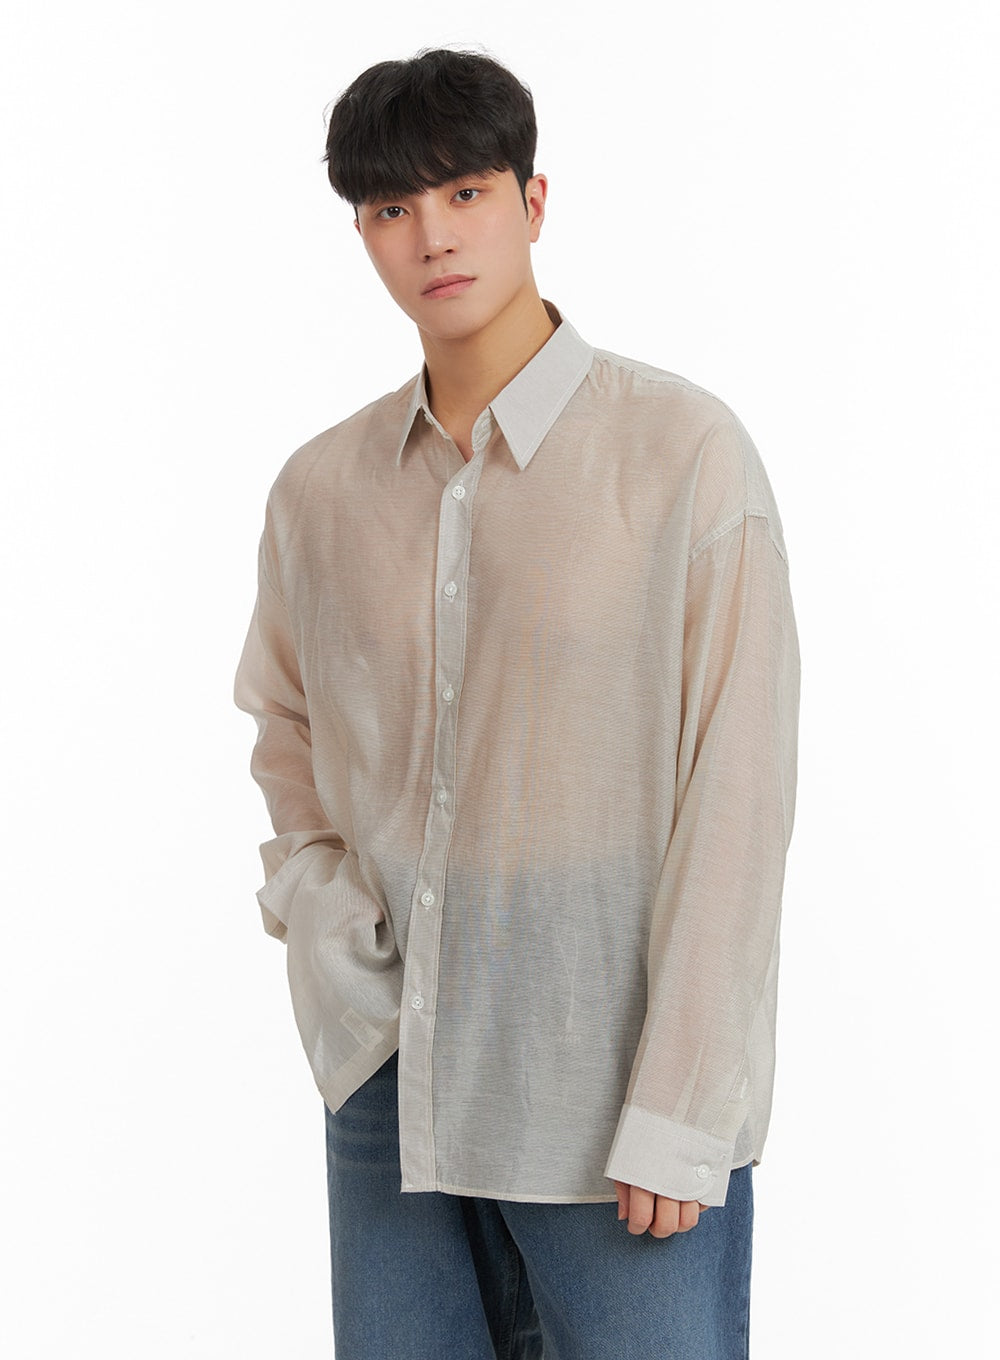 mens-semi-sheer-button-shirt-ia402 / Light beige